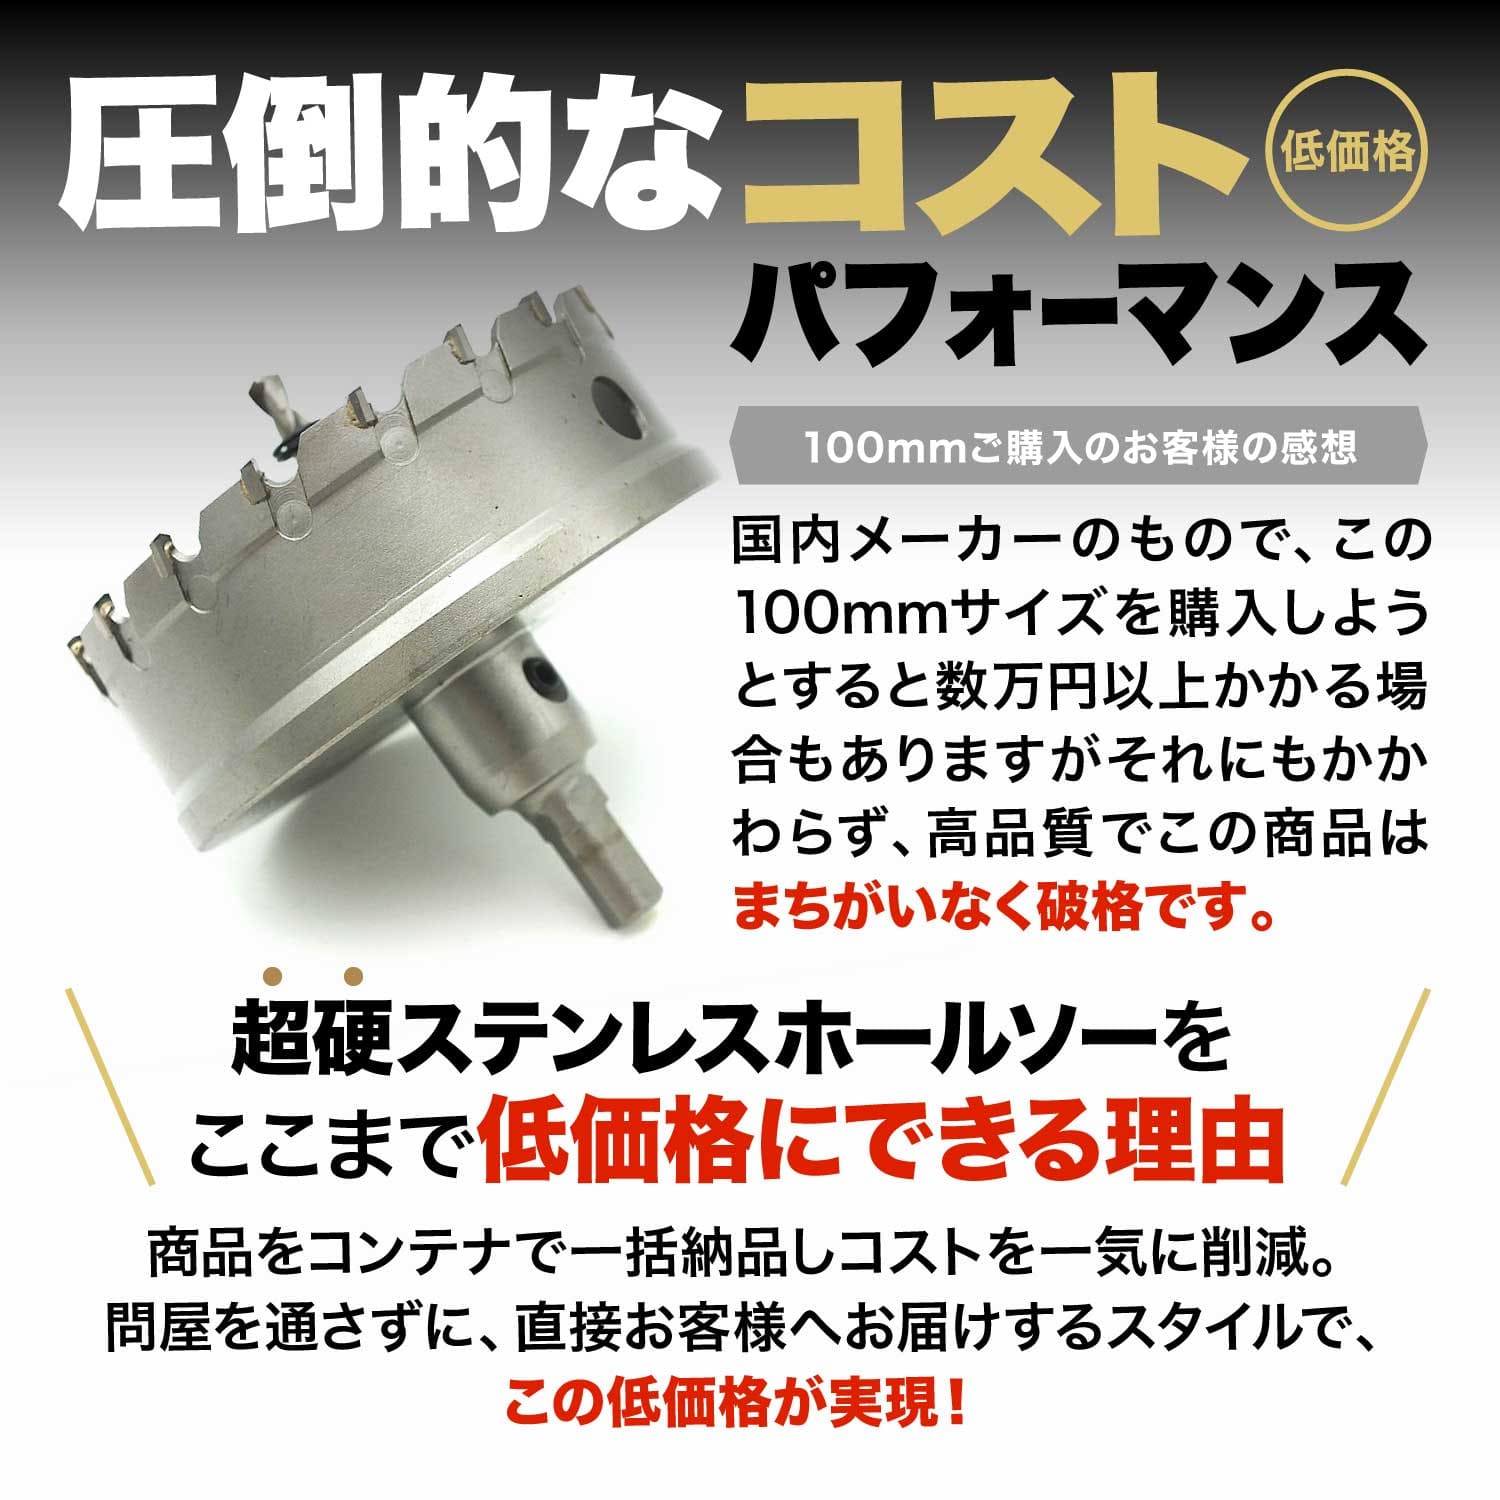 （65mm）送料無料 超硬 ステンレス ホールソー 電動ドリル ボール盤使用可能 ロングホールカッター 穴あけ ホルソー ホールカッター